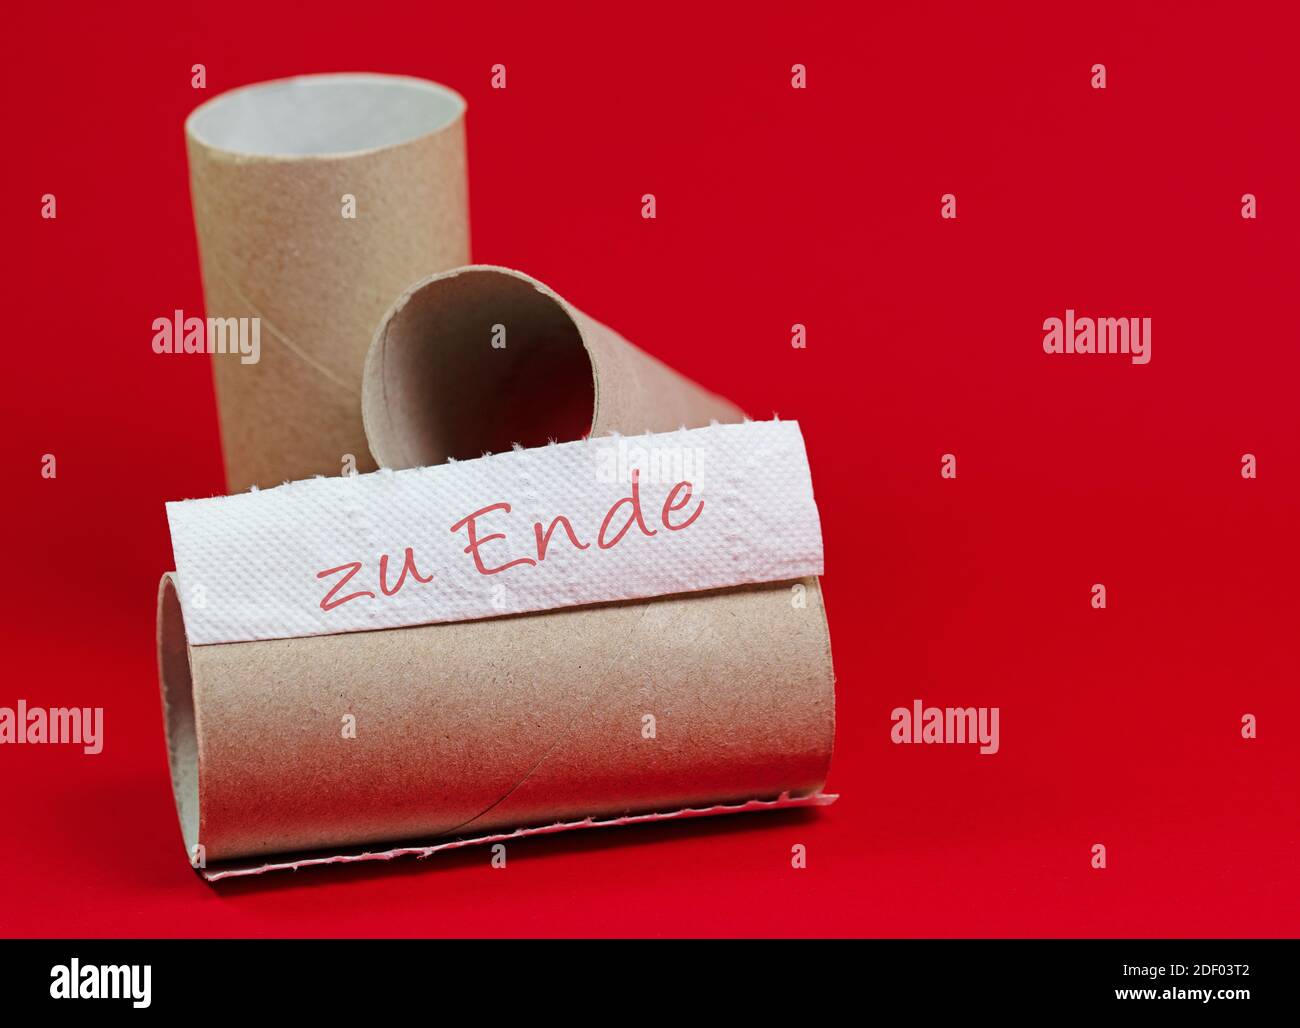 Rouleaux de papier toilette usagés avec texte « zu Ende », traduction « The  End » Photo Stock - Alamy